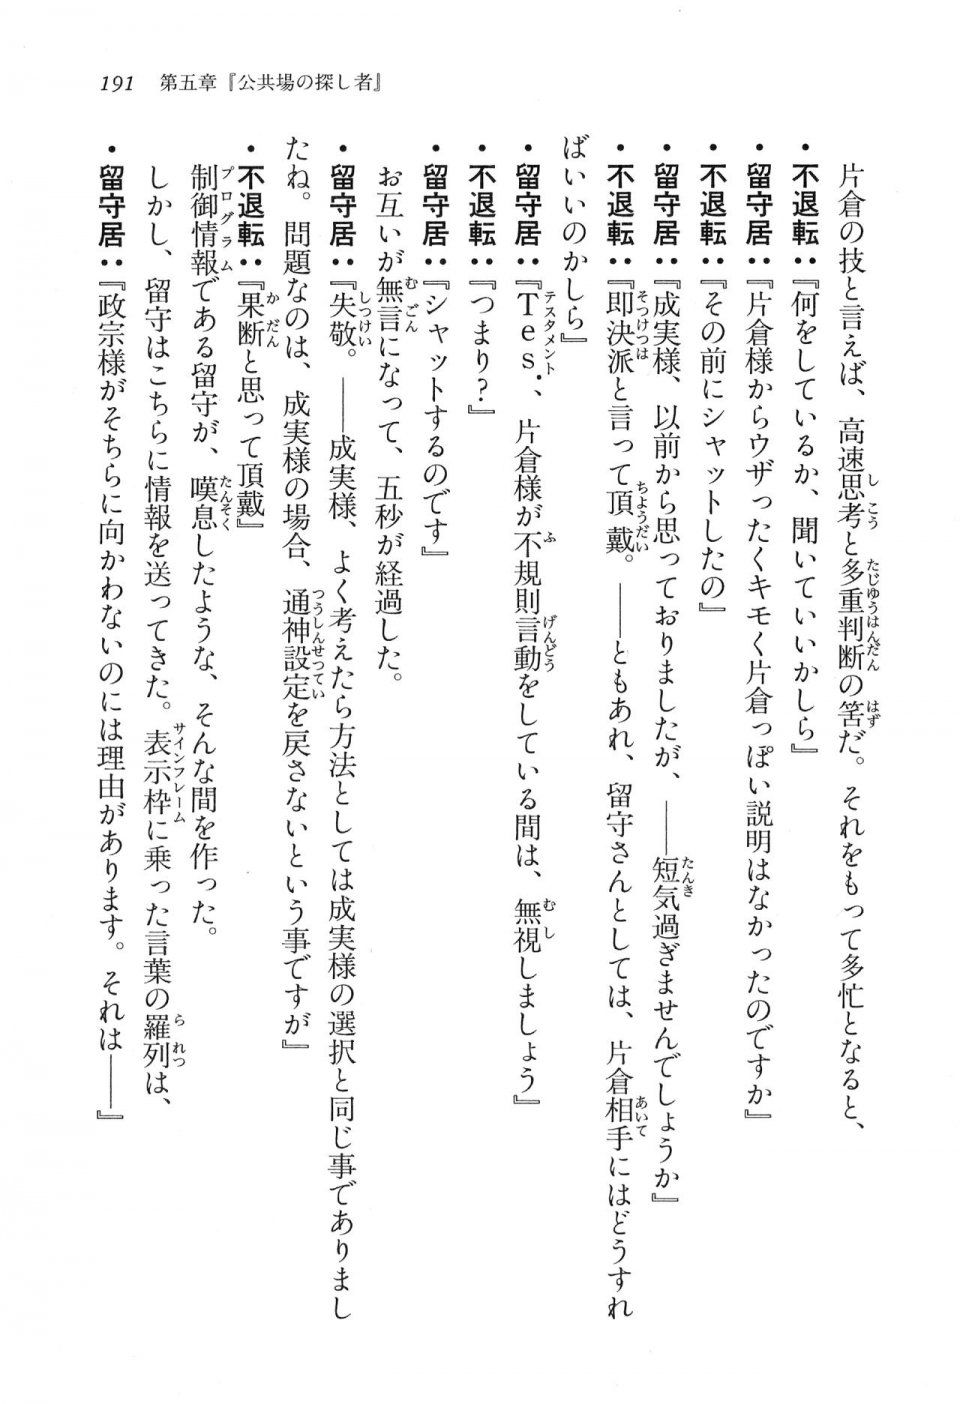 Kyoukai Senjou no Horizon LN Vol 16(7A) - Photo #191